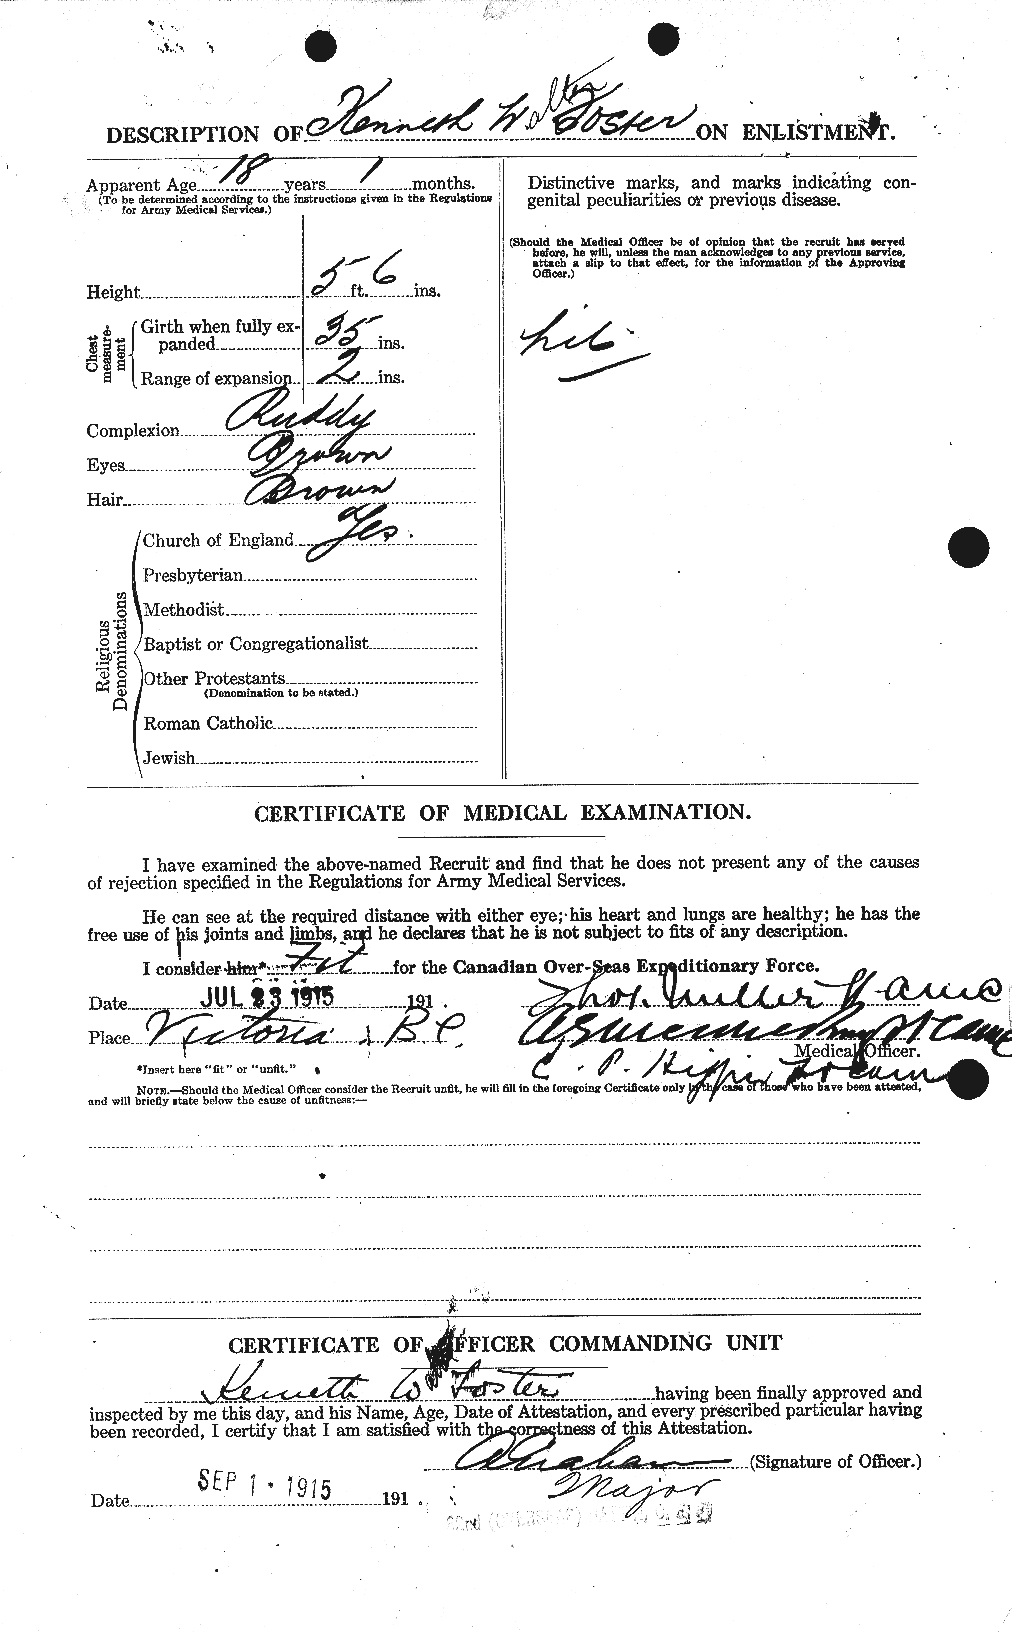 Dossiers du Personnel de la Première Guerre mondiale - CEC 333396b